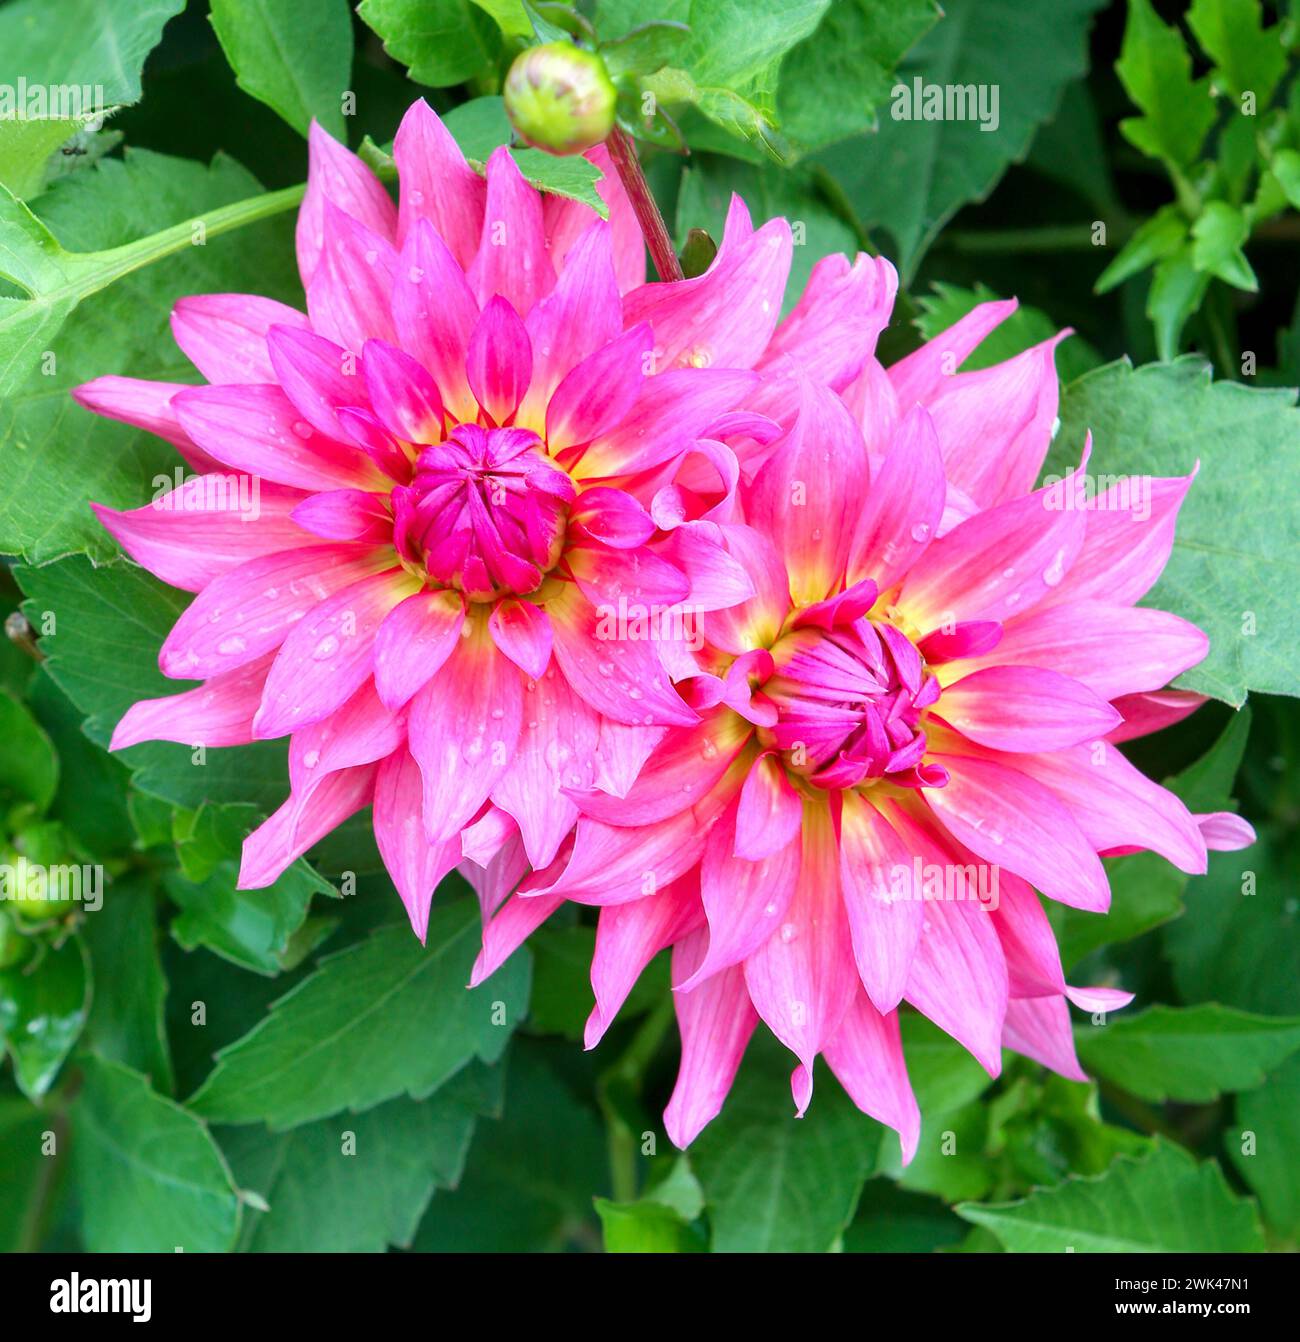 Dahlia fiore rosa. I fiori di Dahlia da vicino. Foto Stock